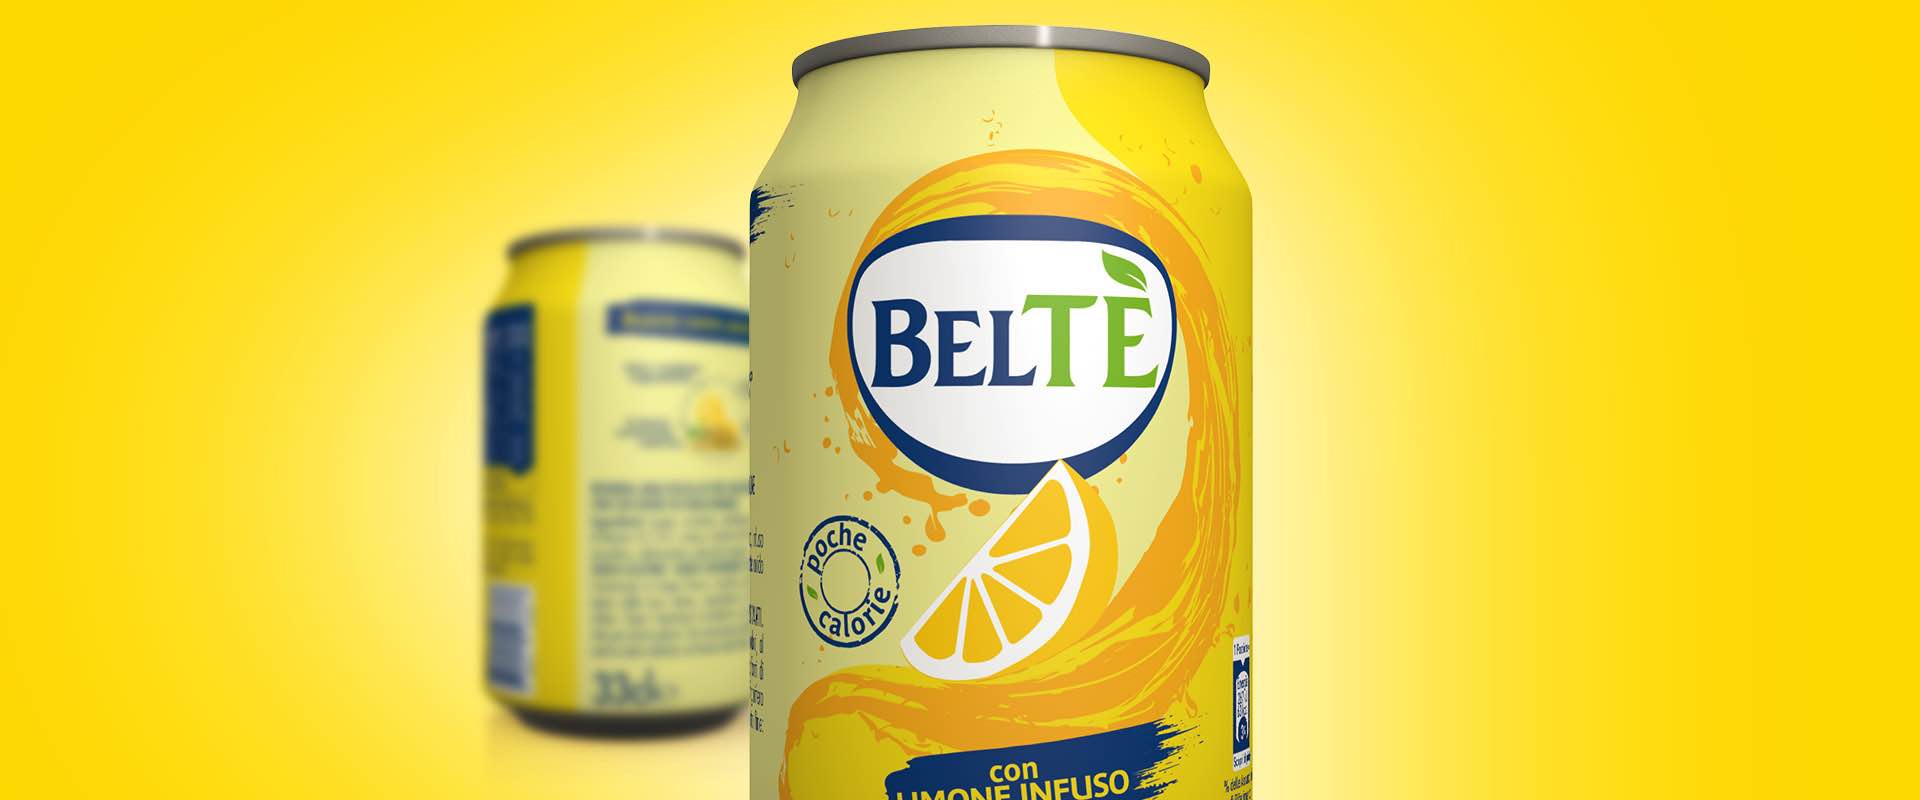 Lemon Beltè: new packaging